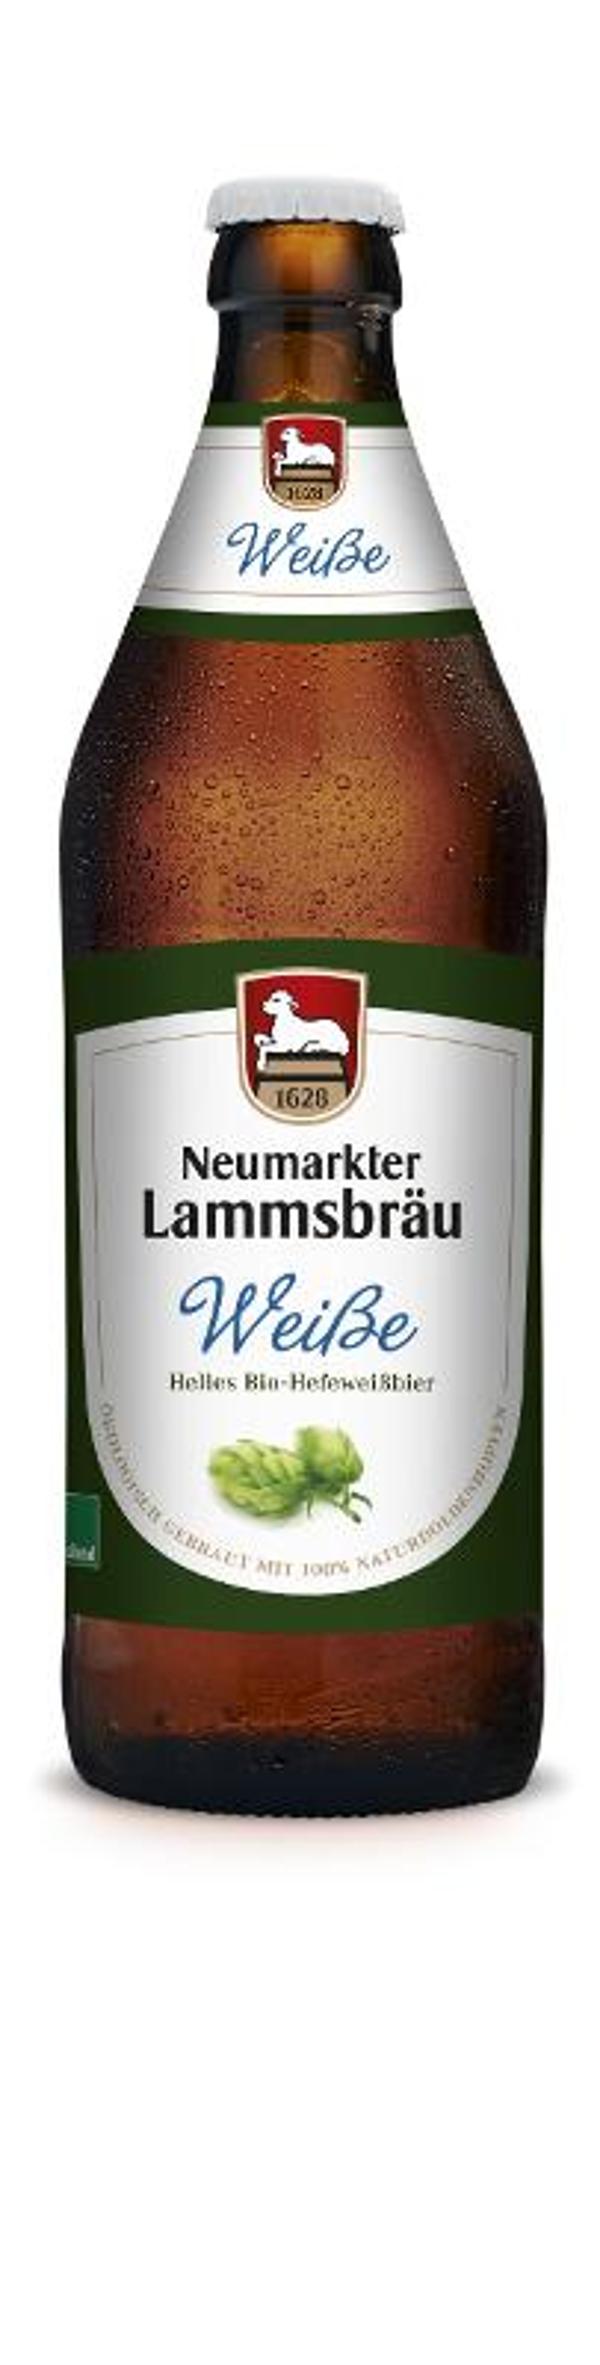 Produktfoto zu Bier Weiße 0,5 l Neumarkter Lammsbräu